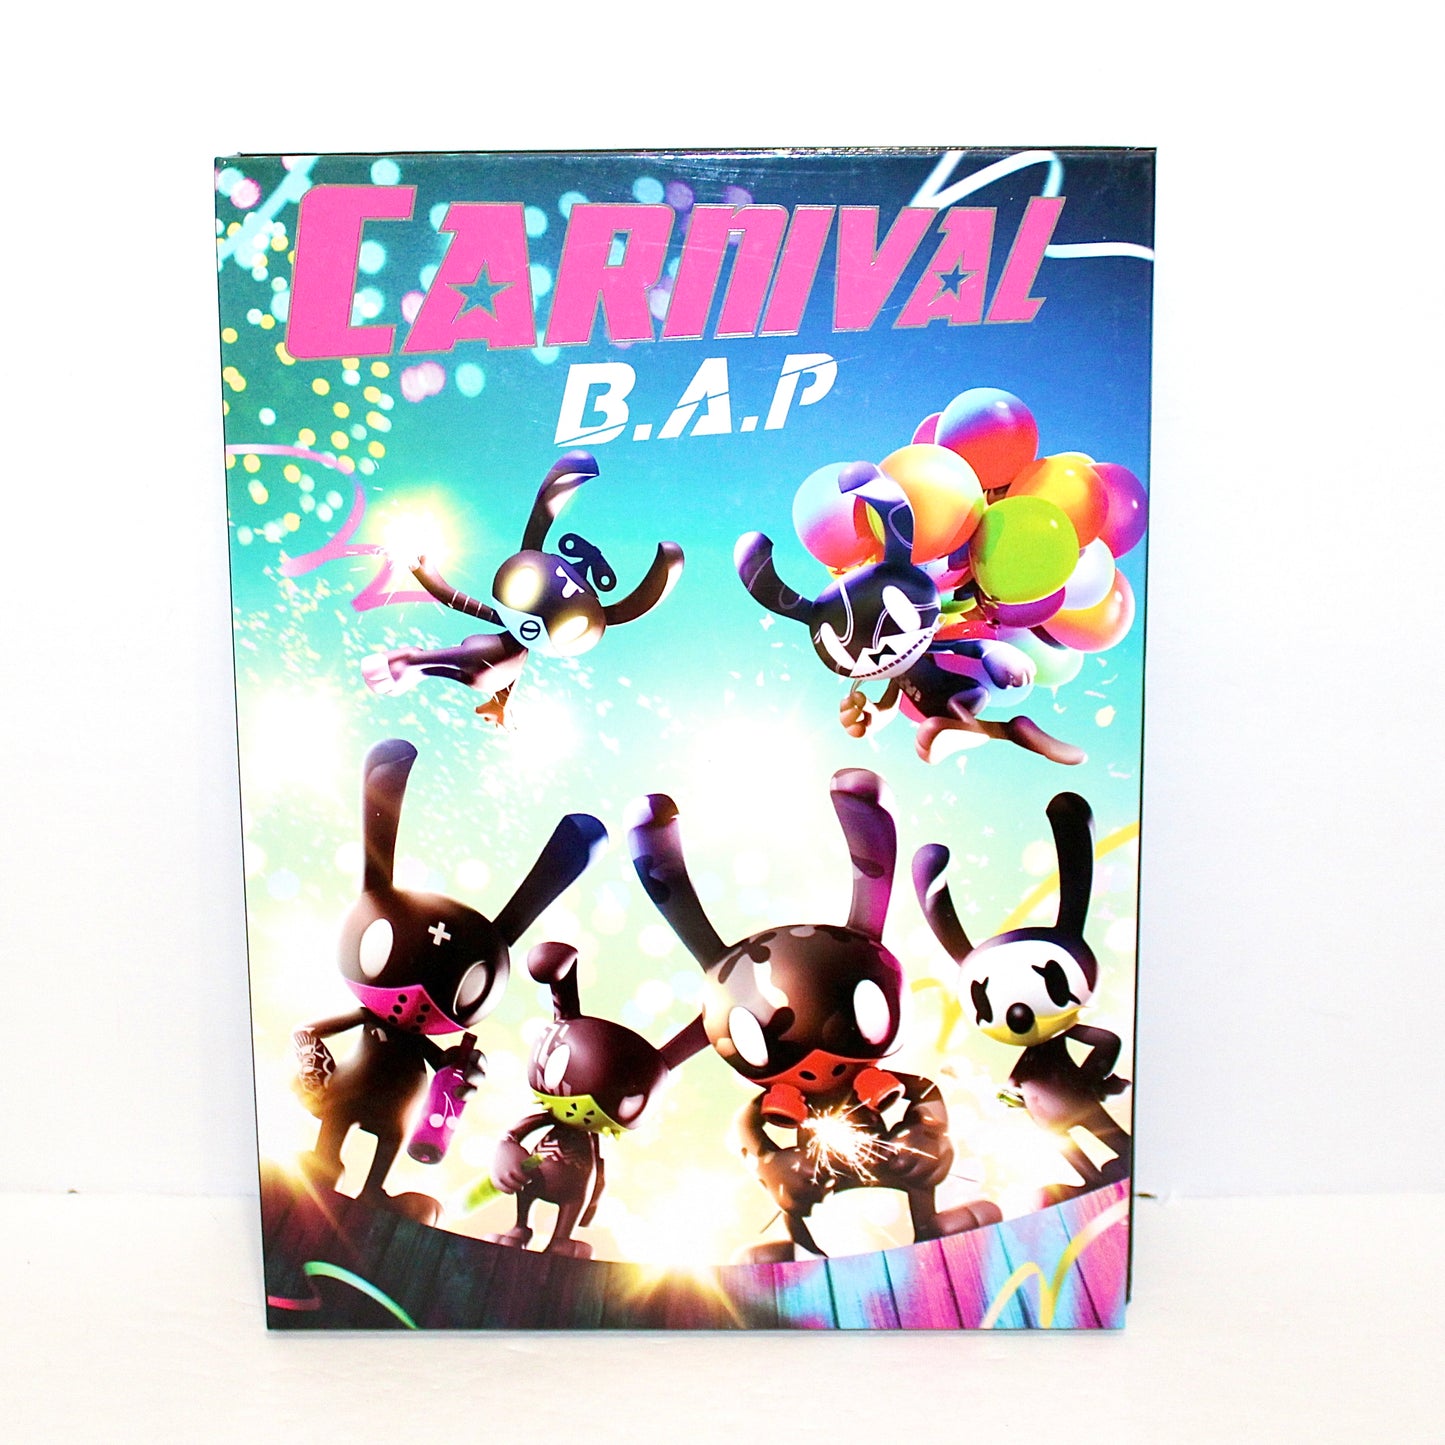 B.A.P 5th Mini Album: Carnival | Special Version